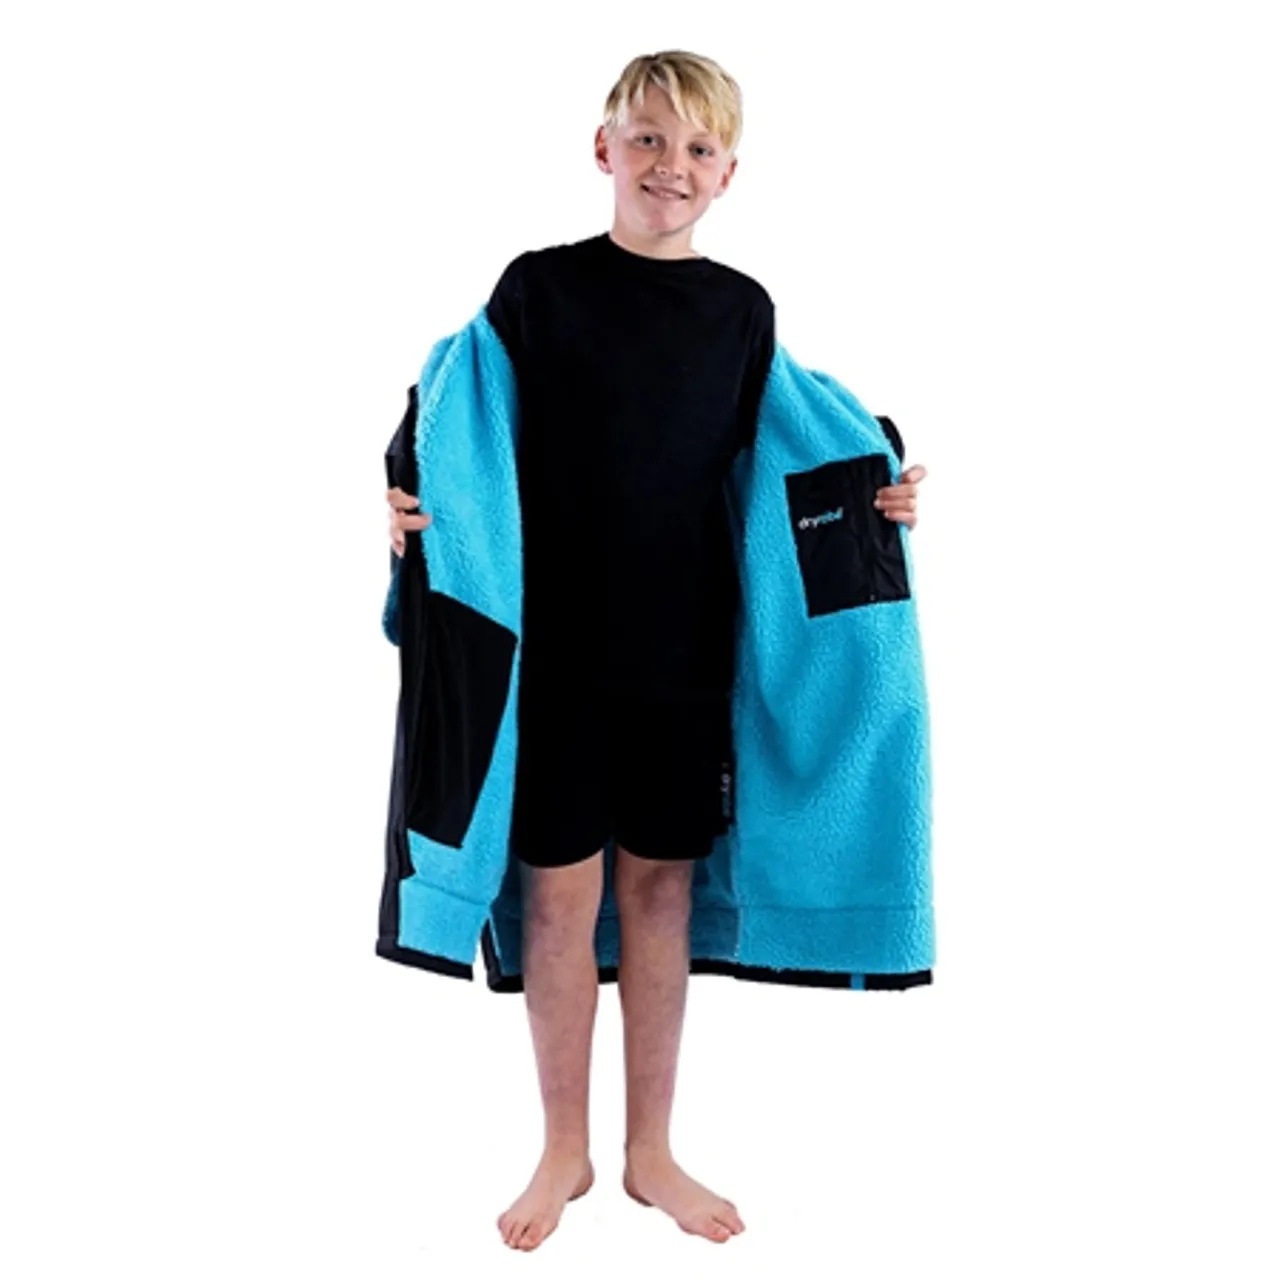 Dryrobe Kids Advance Short Sleeved - Black & Blue